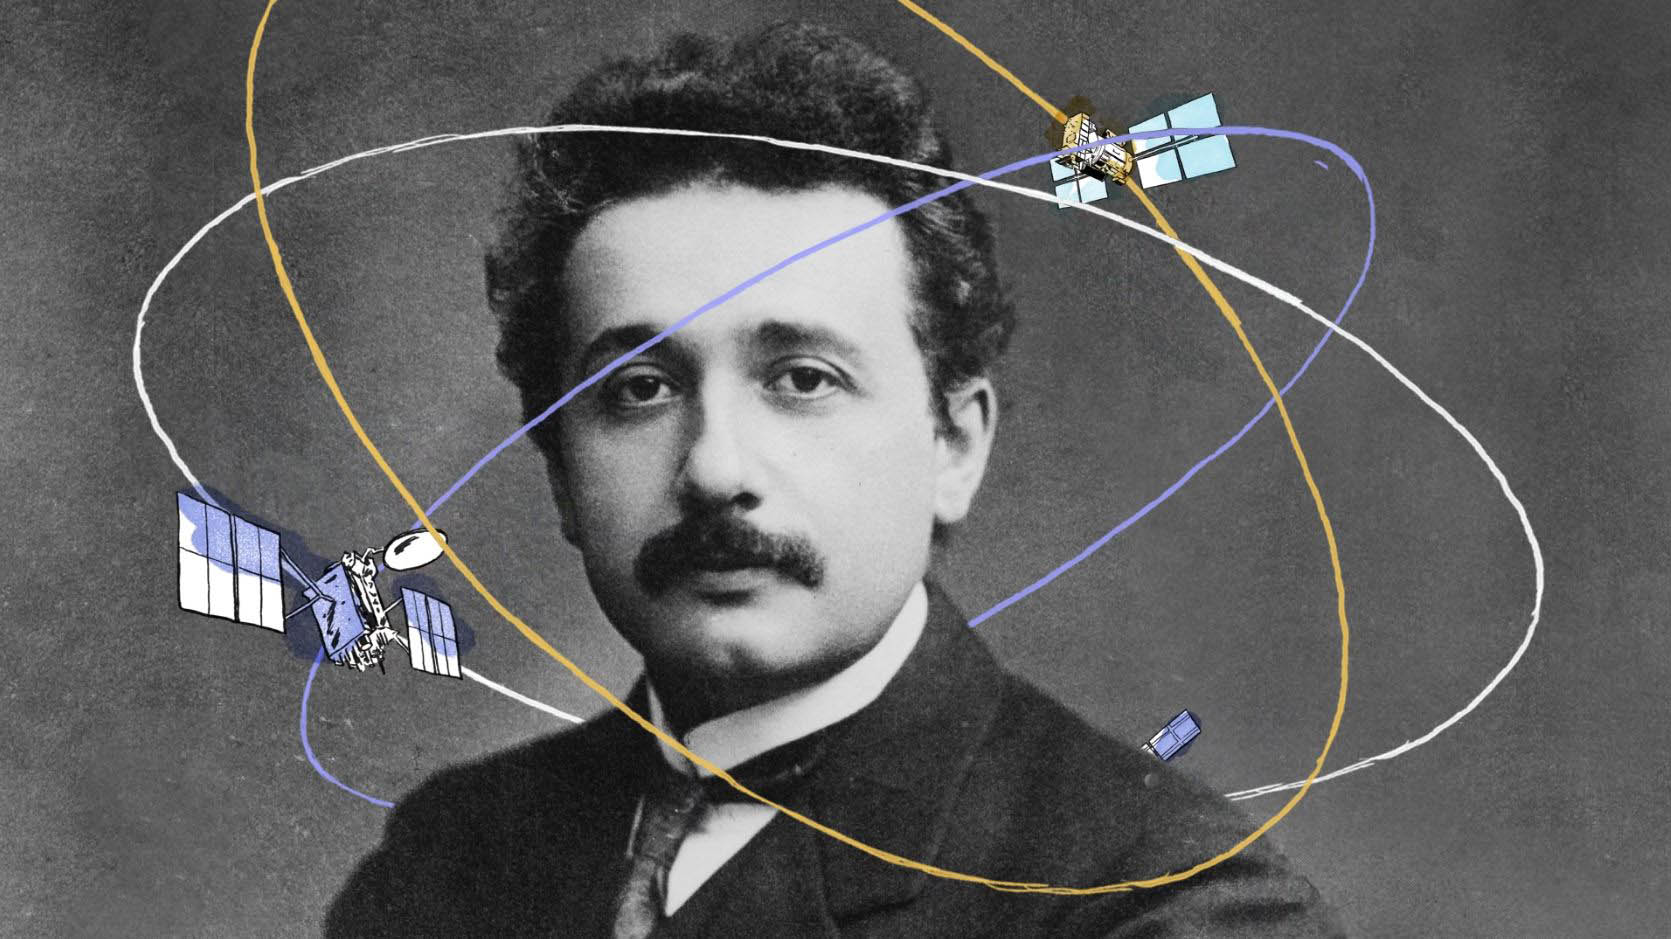 Porträtfoto von Albert Einstein